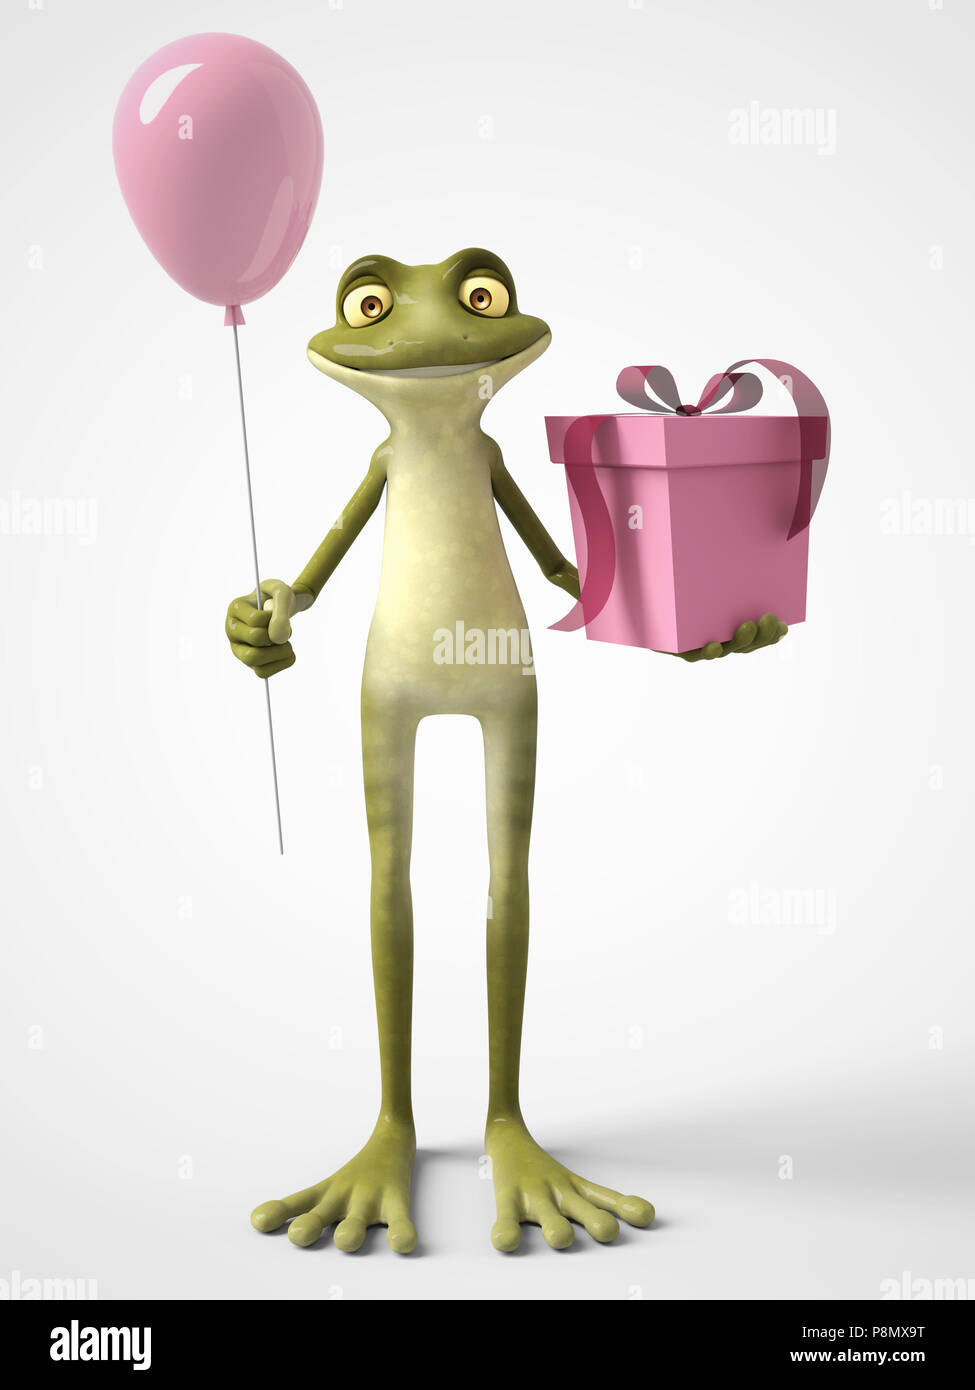 3D-Rendering mit einem lächelnden, cartoon Frosch Holding ein rosa  Luftballon in der einen Hand und ein Geburtstagsgeschenk in der anderen.  Weißer Hintergrund Stockfotografie - Alamy